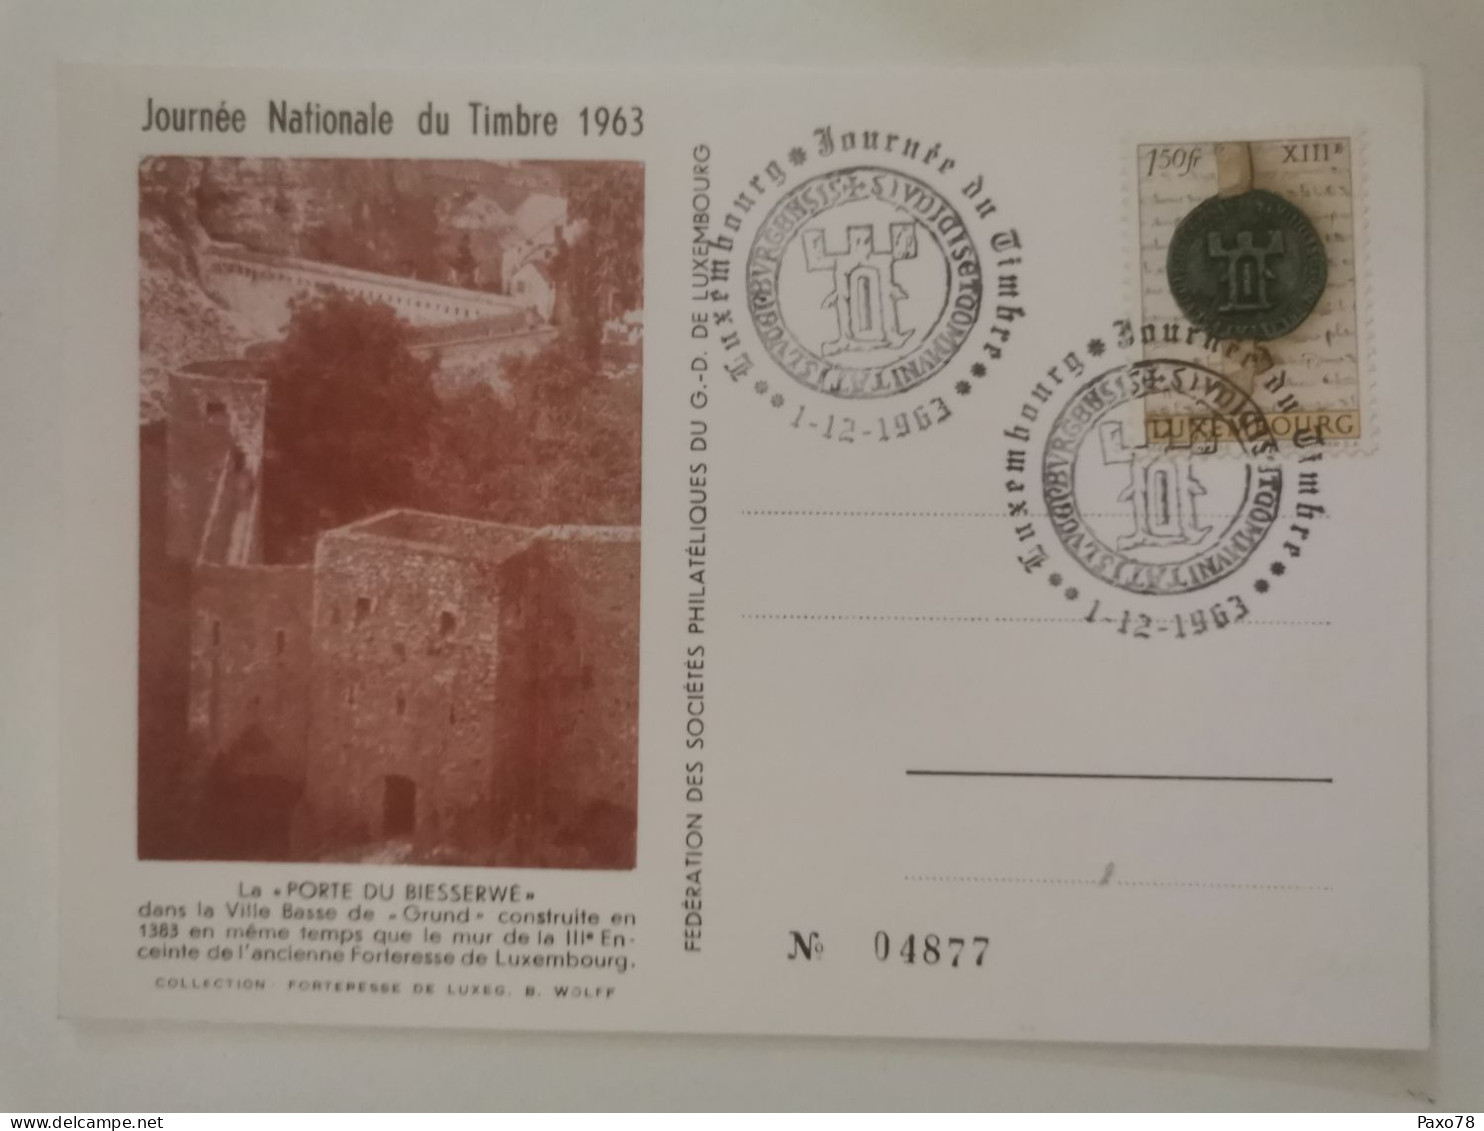 Journée Du Timbre 1963 - Commemoration Cards